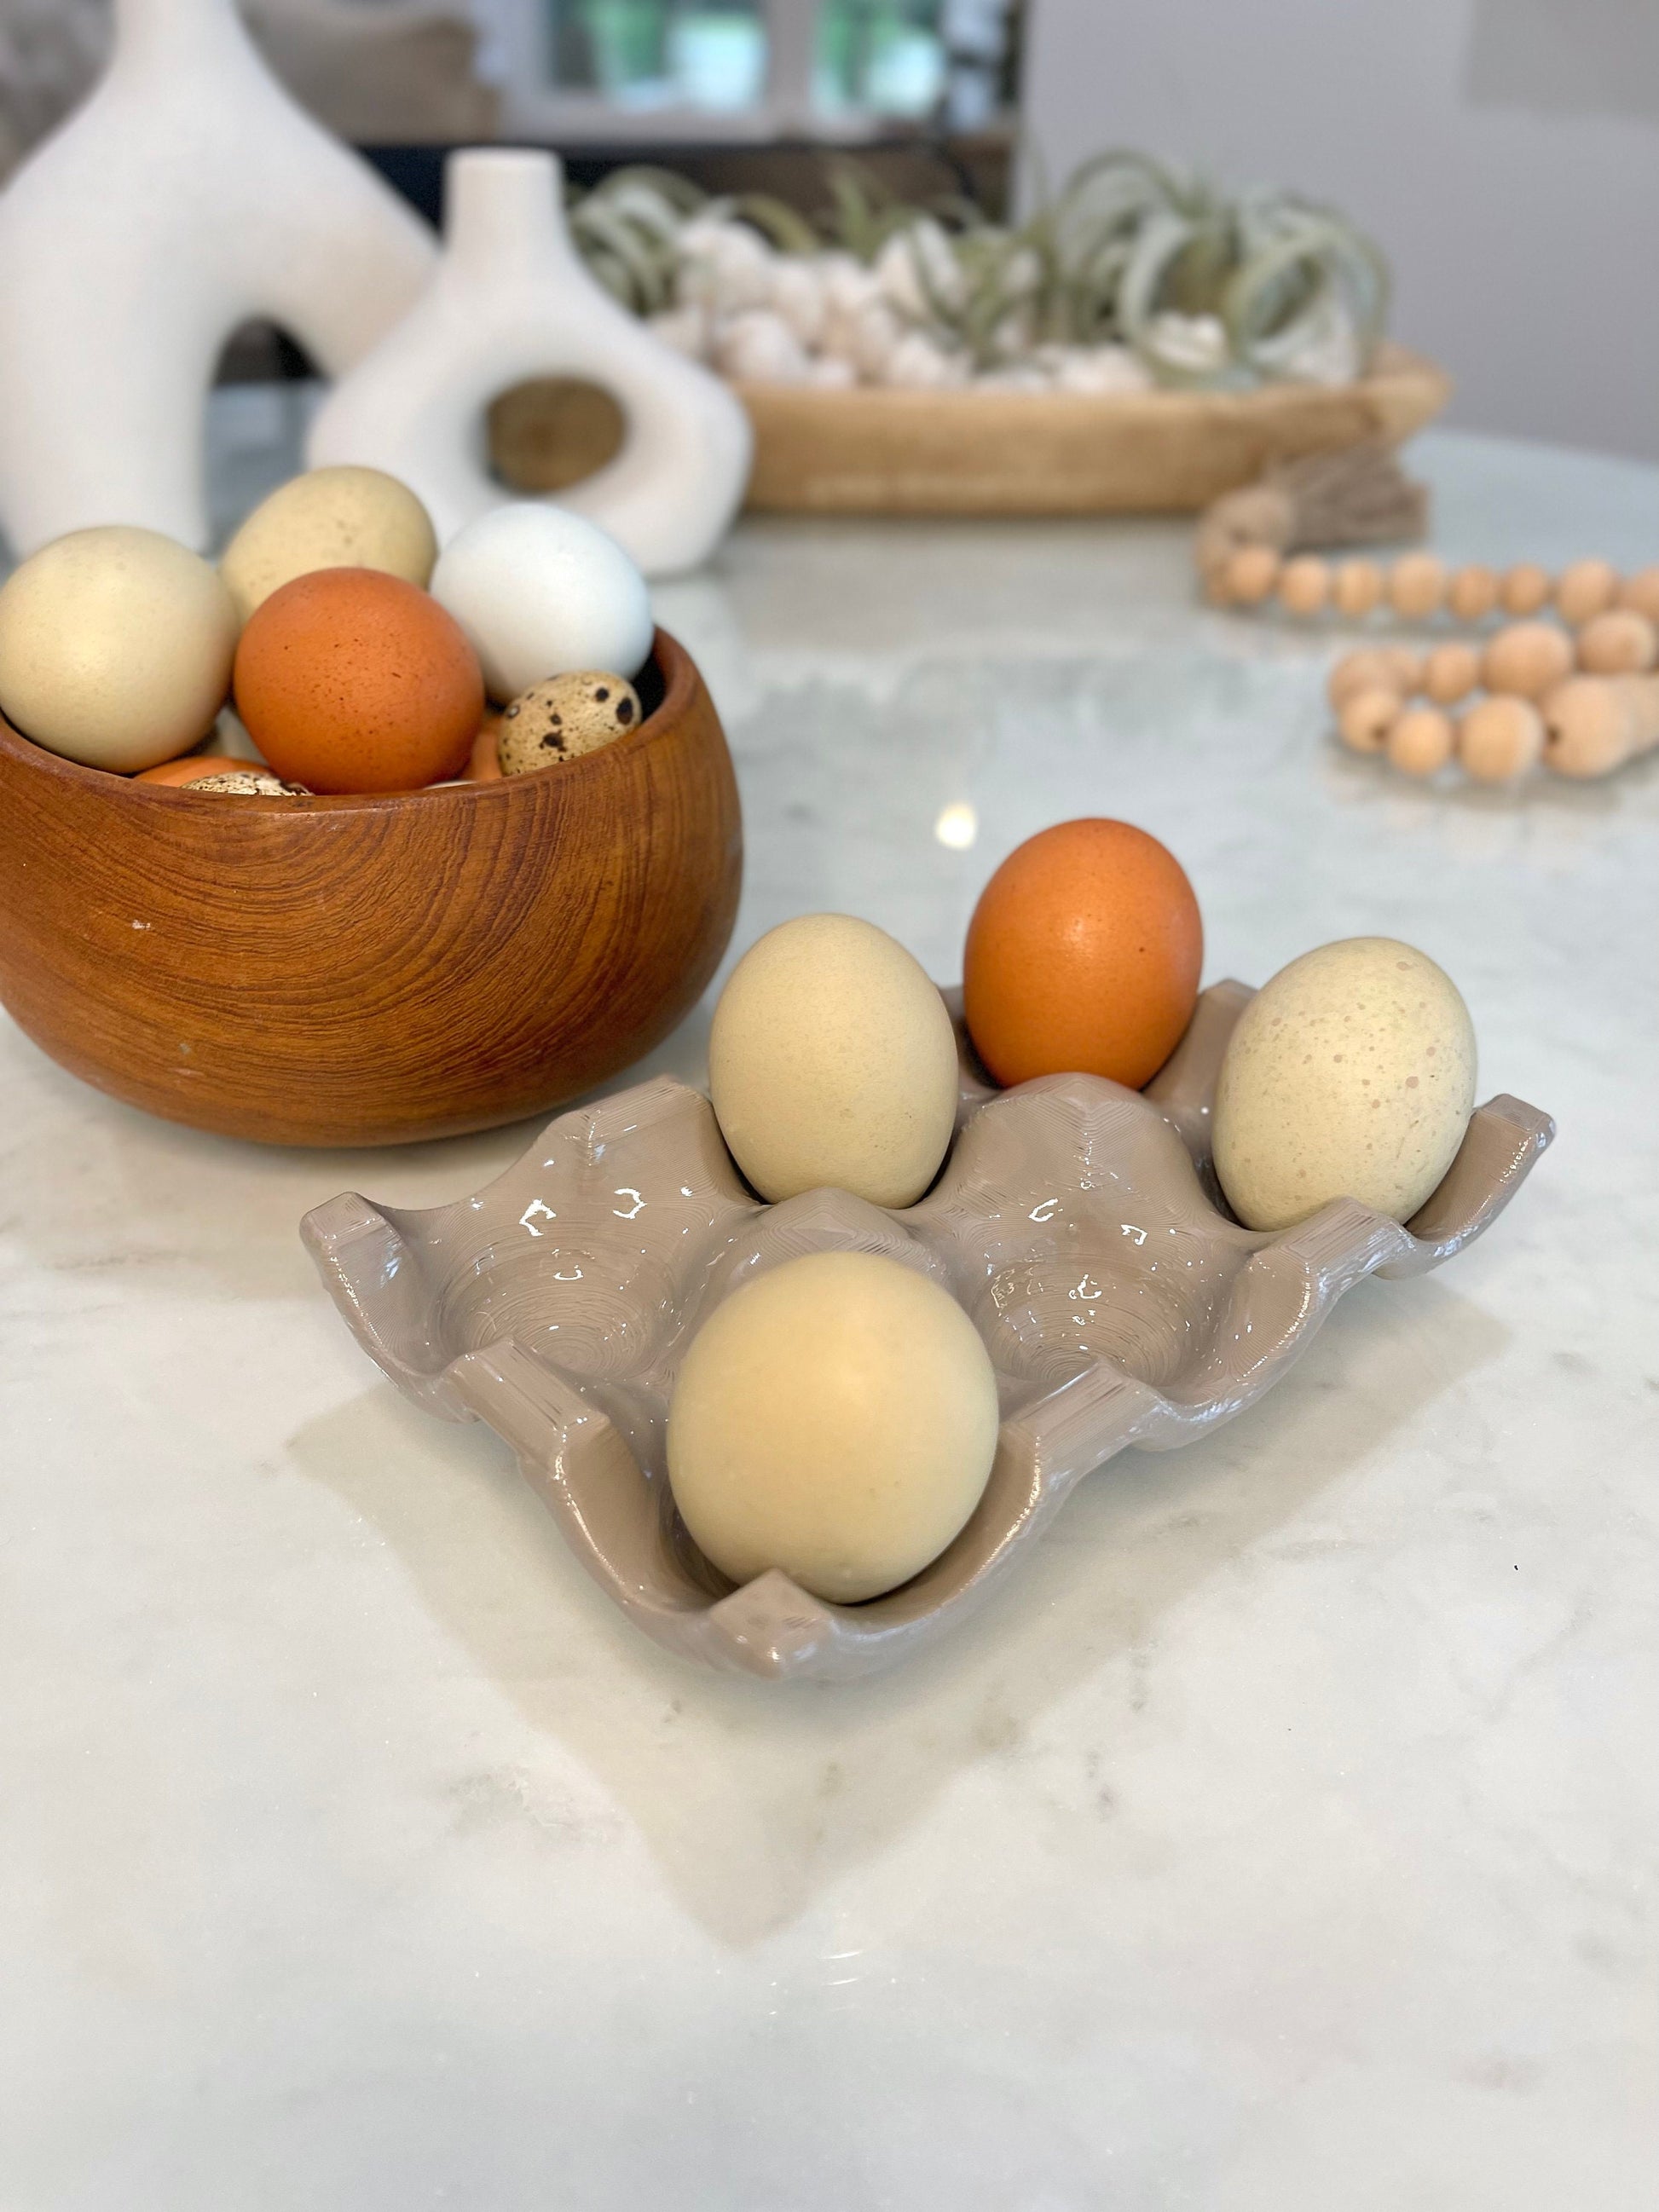 Egg Holder, Egg Display, Farm Decor, Chicken Decor, Egg Display, Farm Fresh  Eggs, Egg Holder Countertop, Duck Egg 